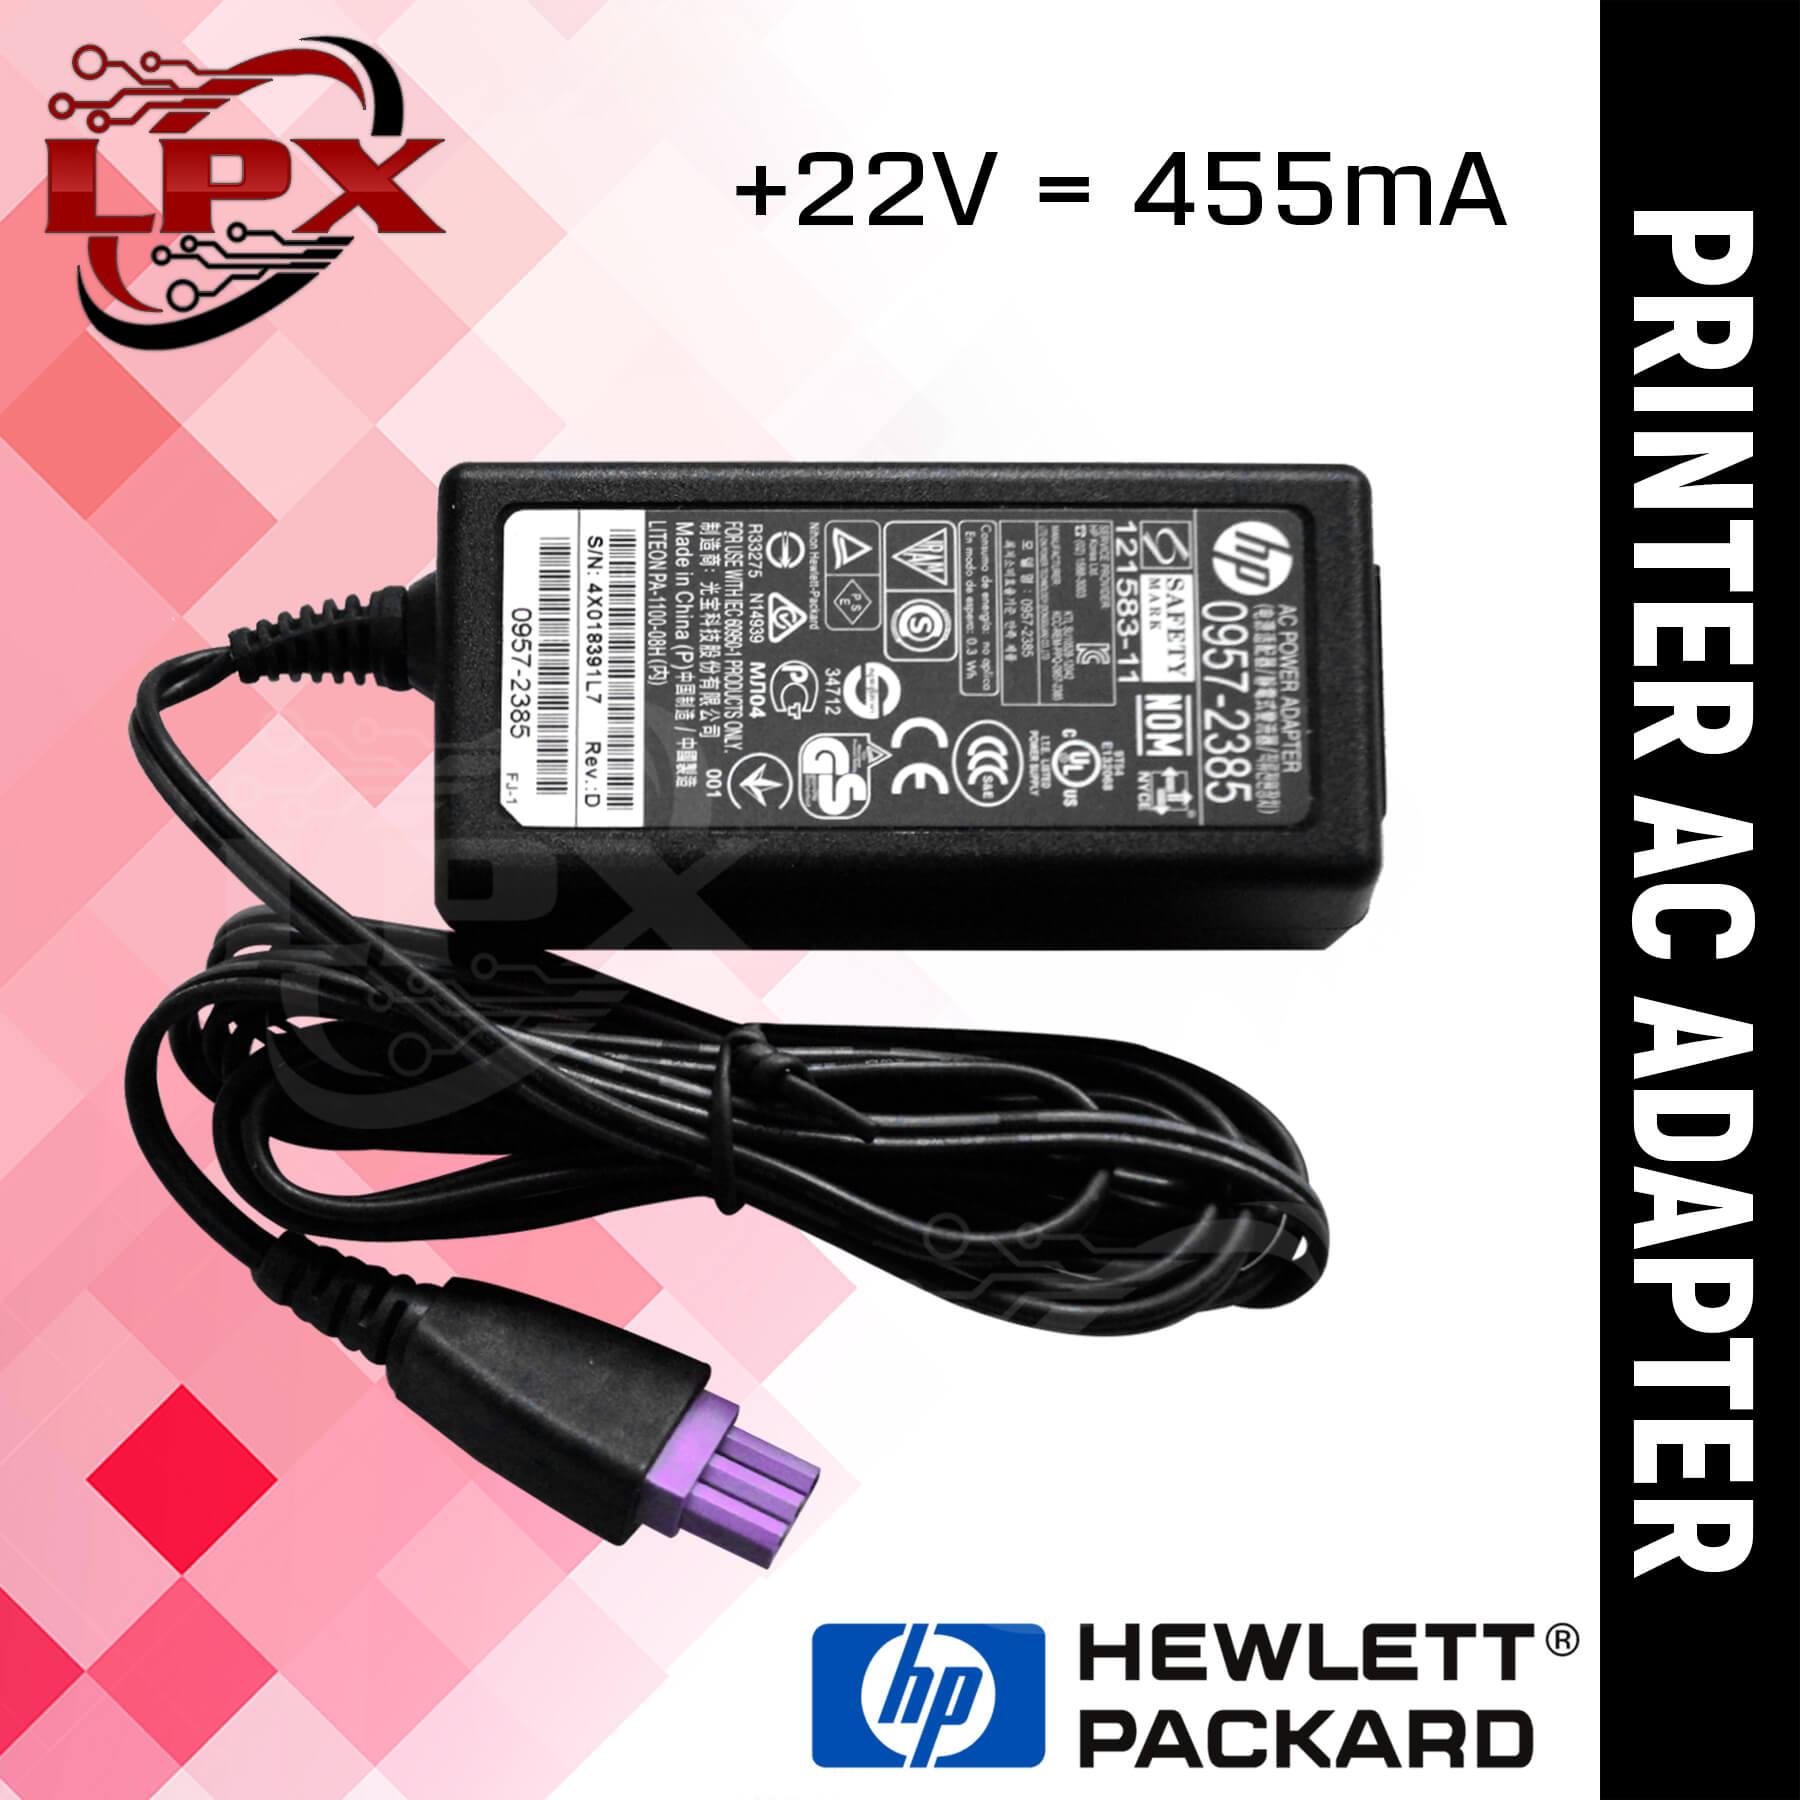 HP Deskjet 2620 Printer Power Cord